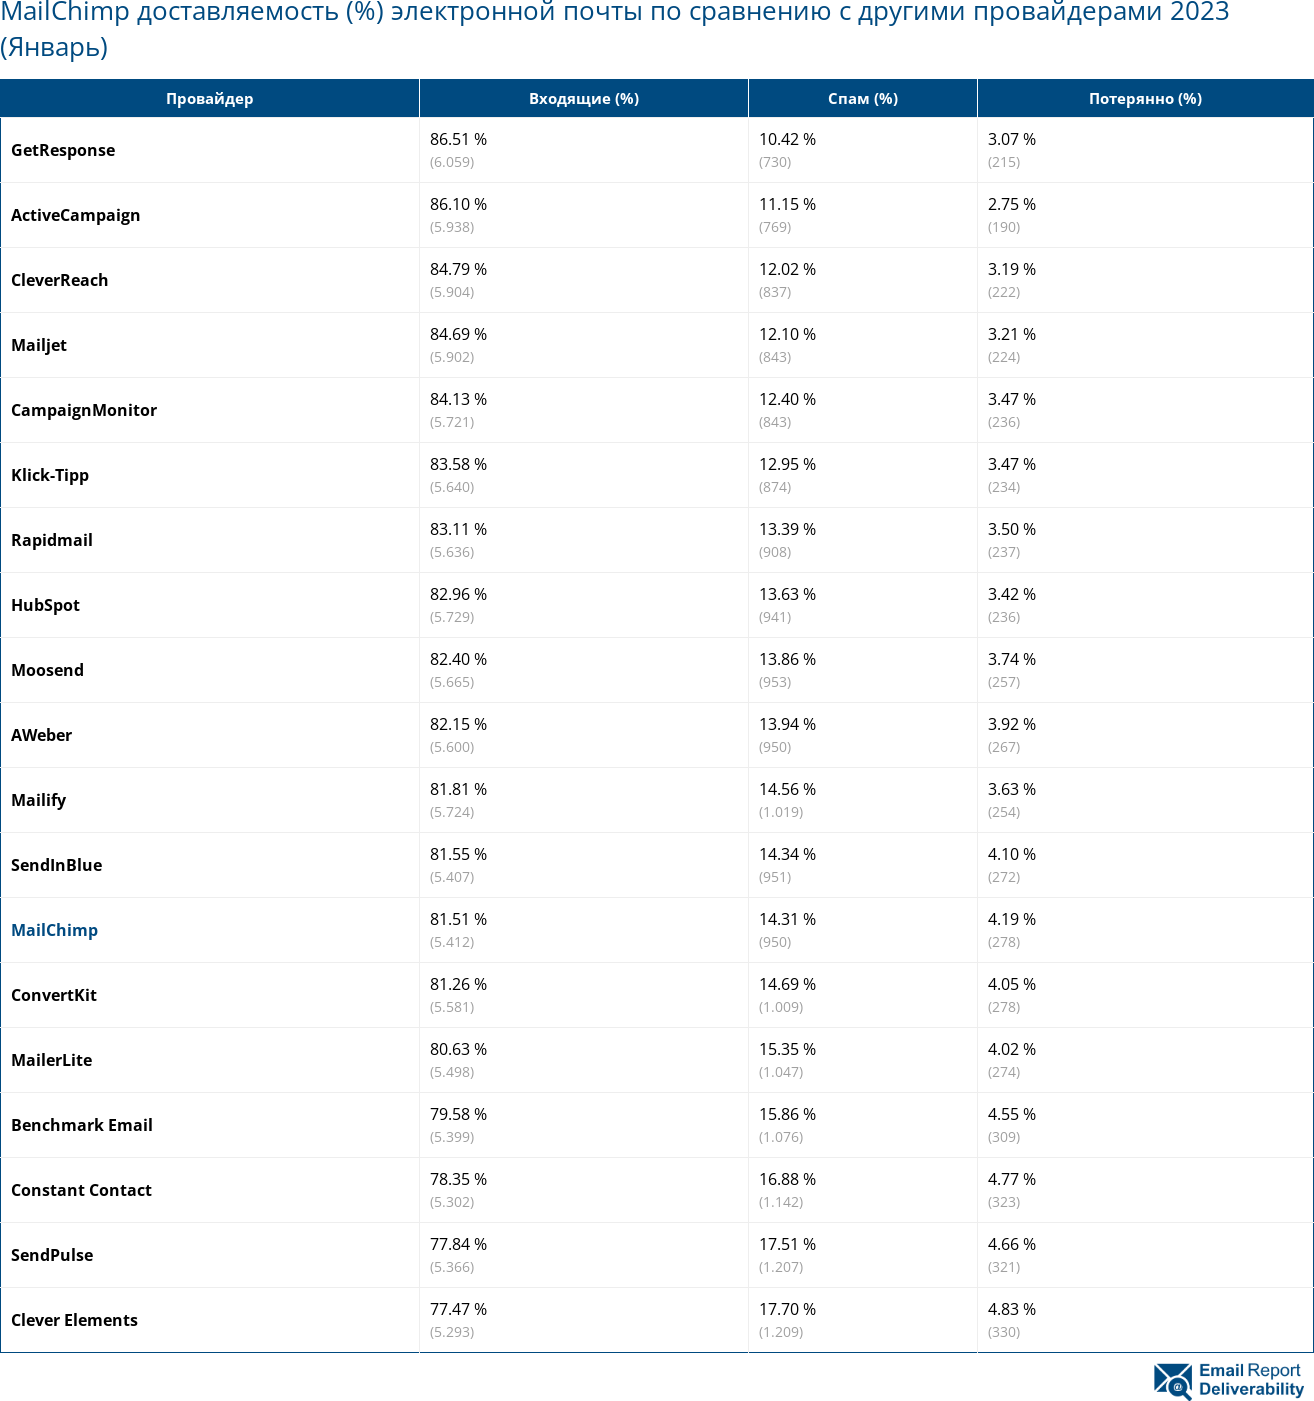 MailChimp доставляемость (%) электронной почты по сравнению с другими провайдерами 2023 (Январь)